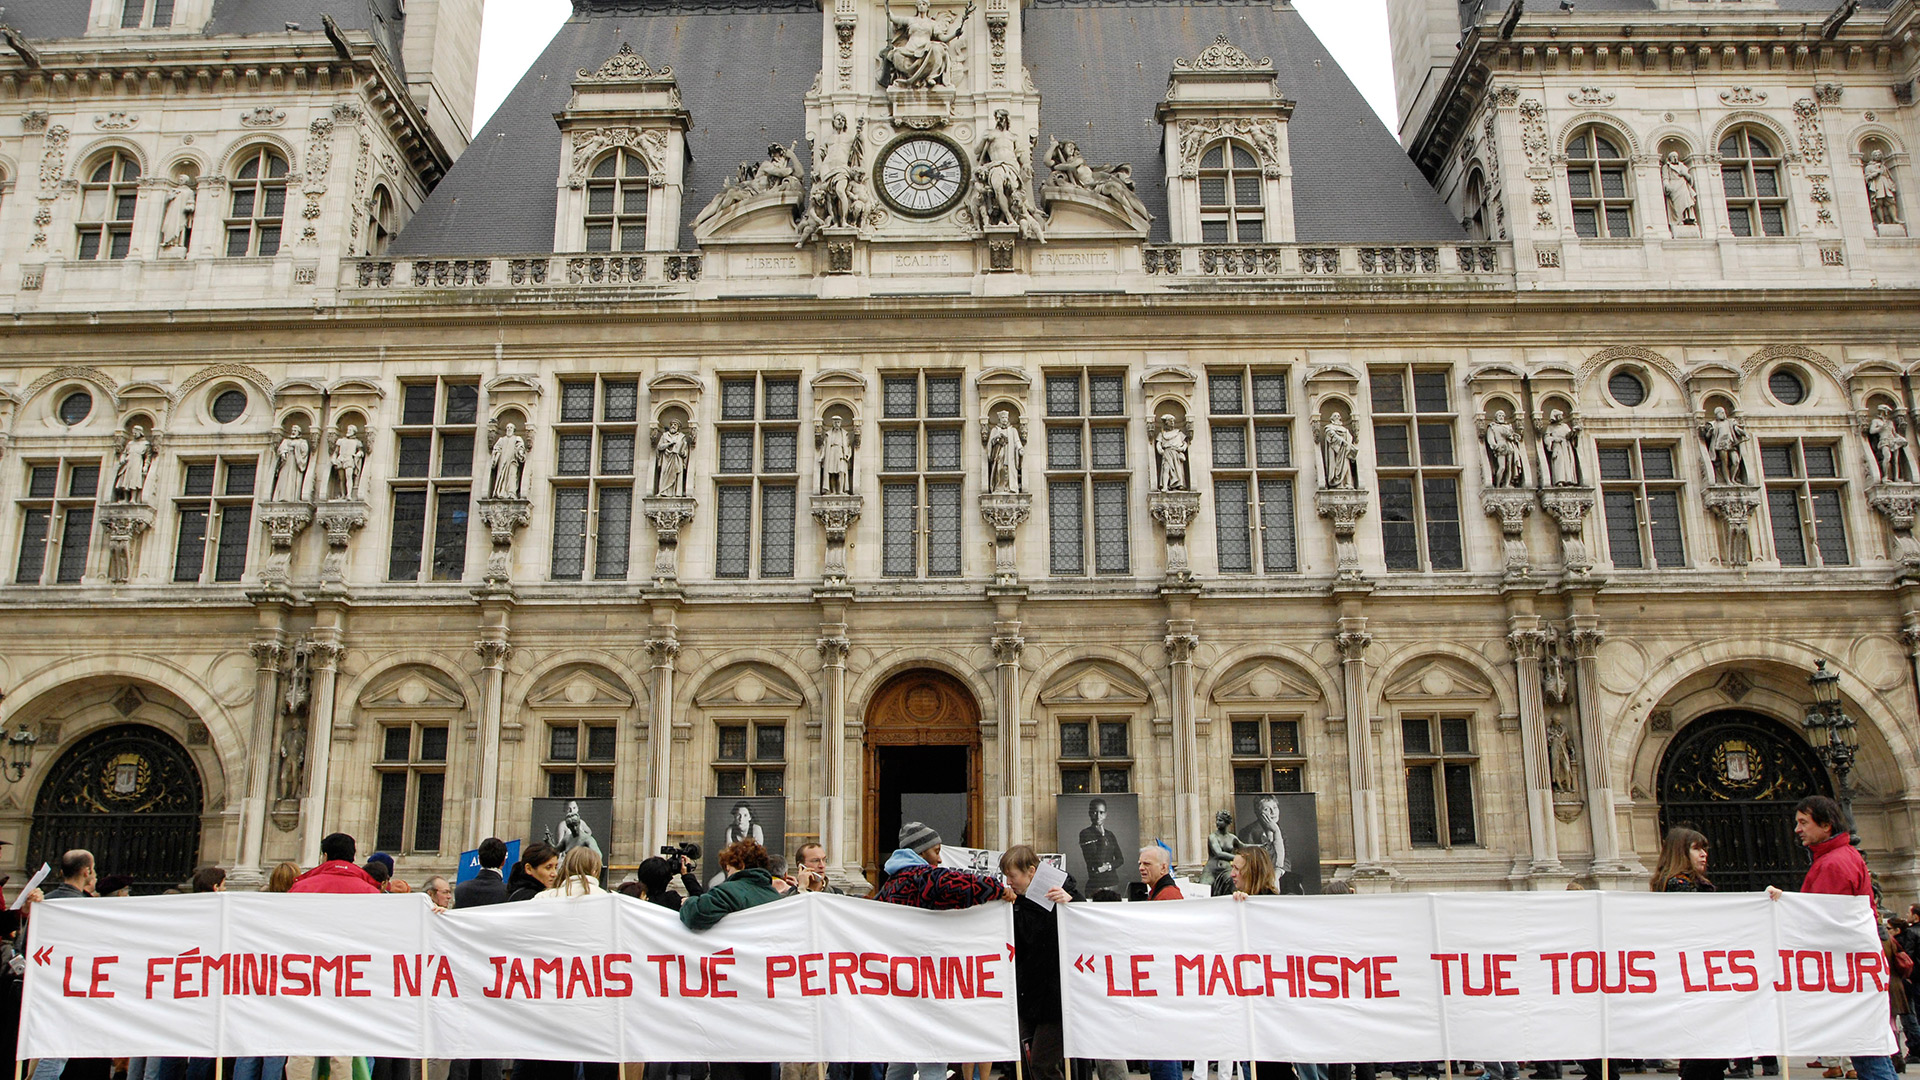 Francia quiere multar a los hombres por piropear en la calle